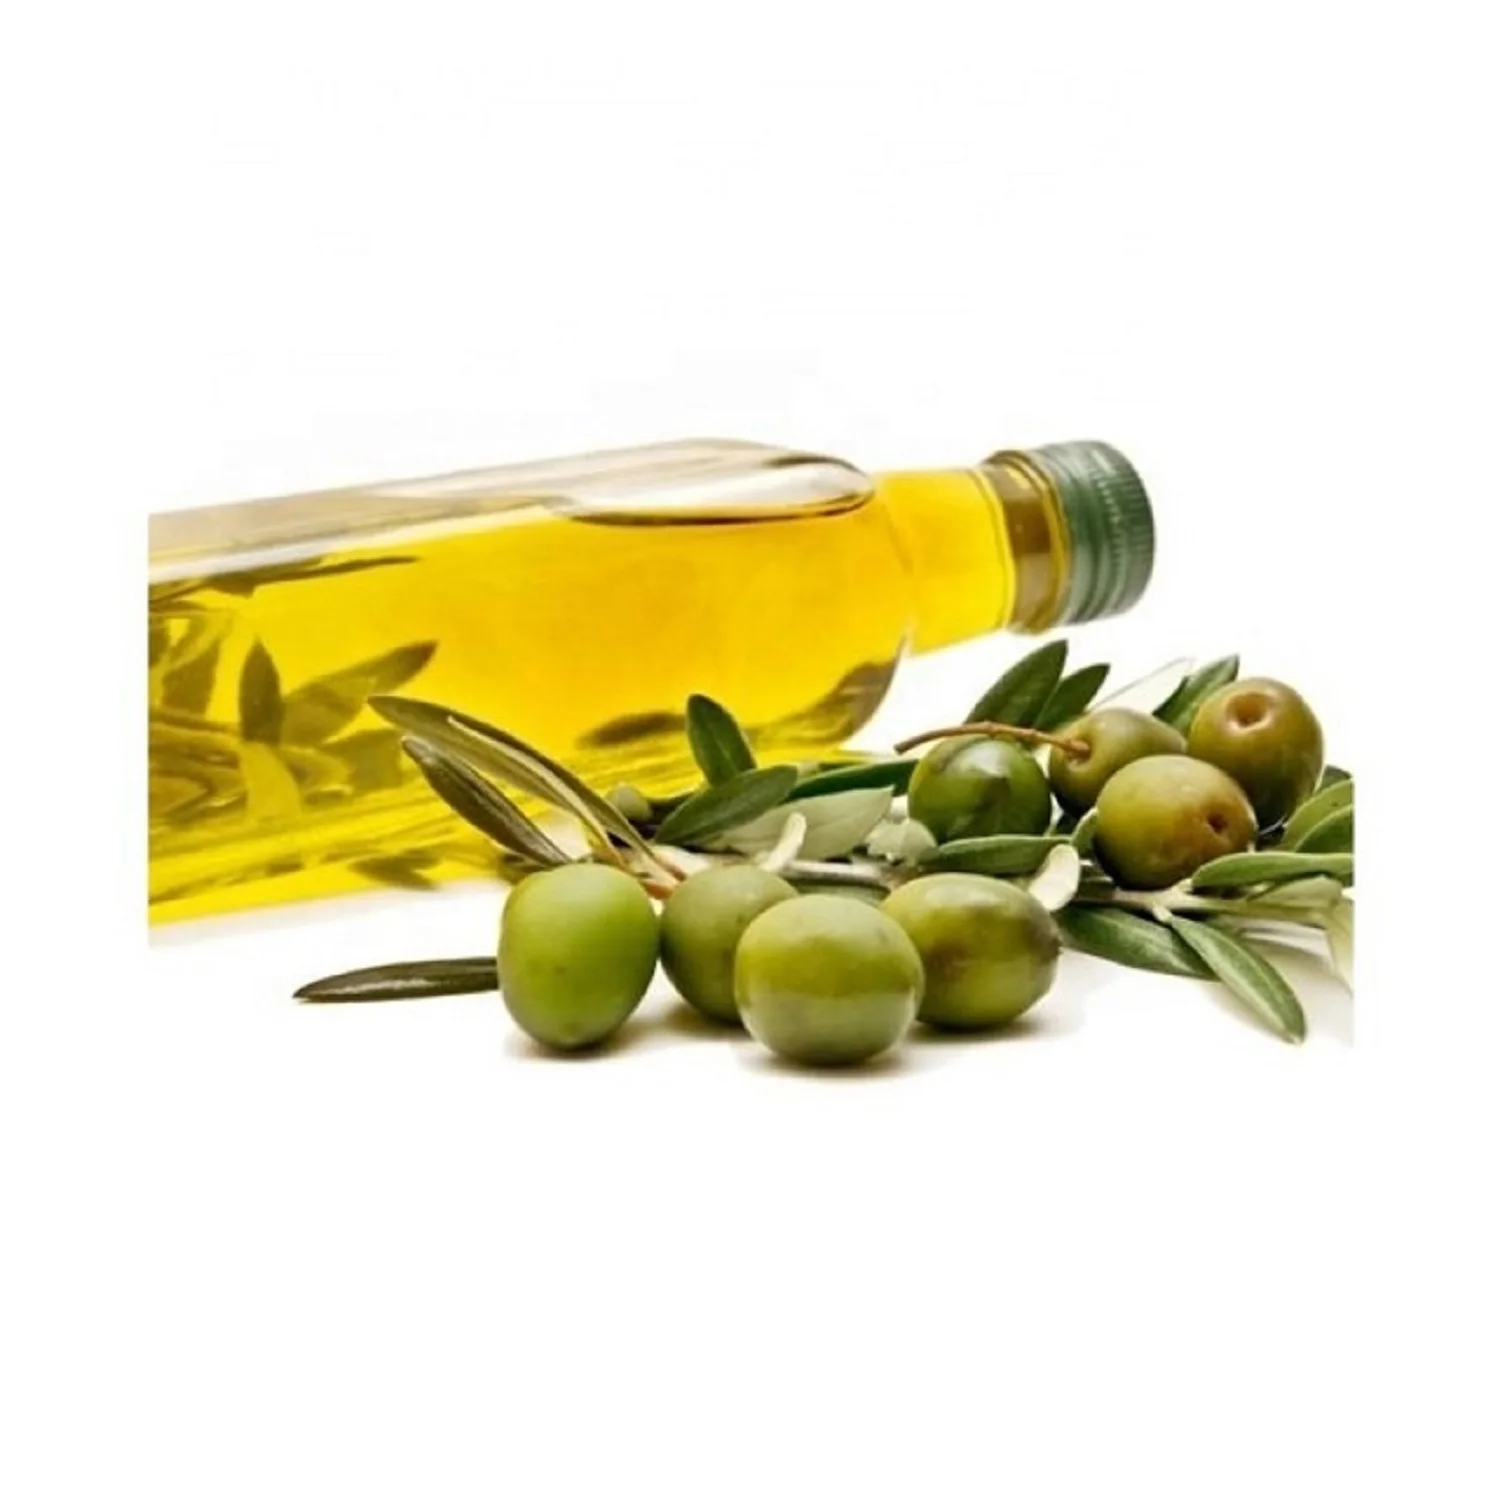 Оливковое масло имеет